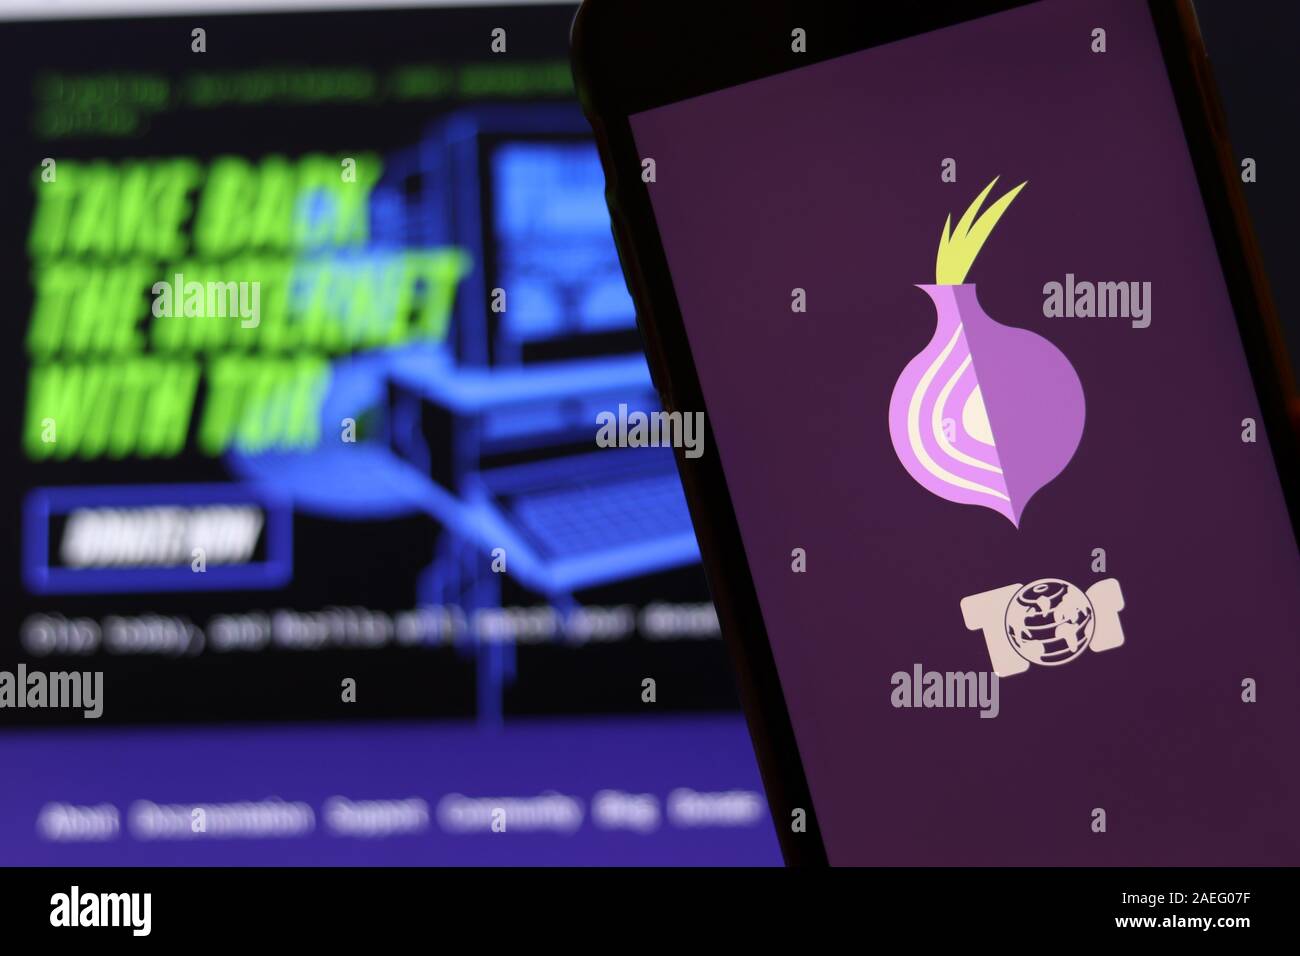 Tor browser фото mega вход скачать tor browser на русском бесплатно на телефон mega2web